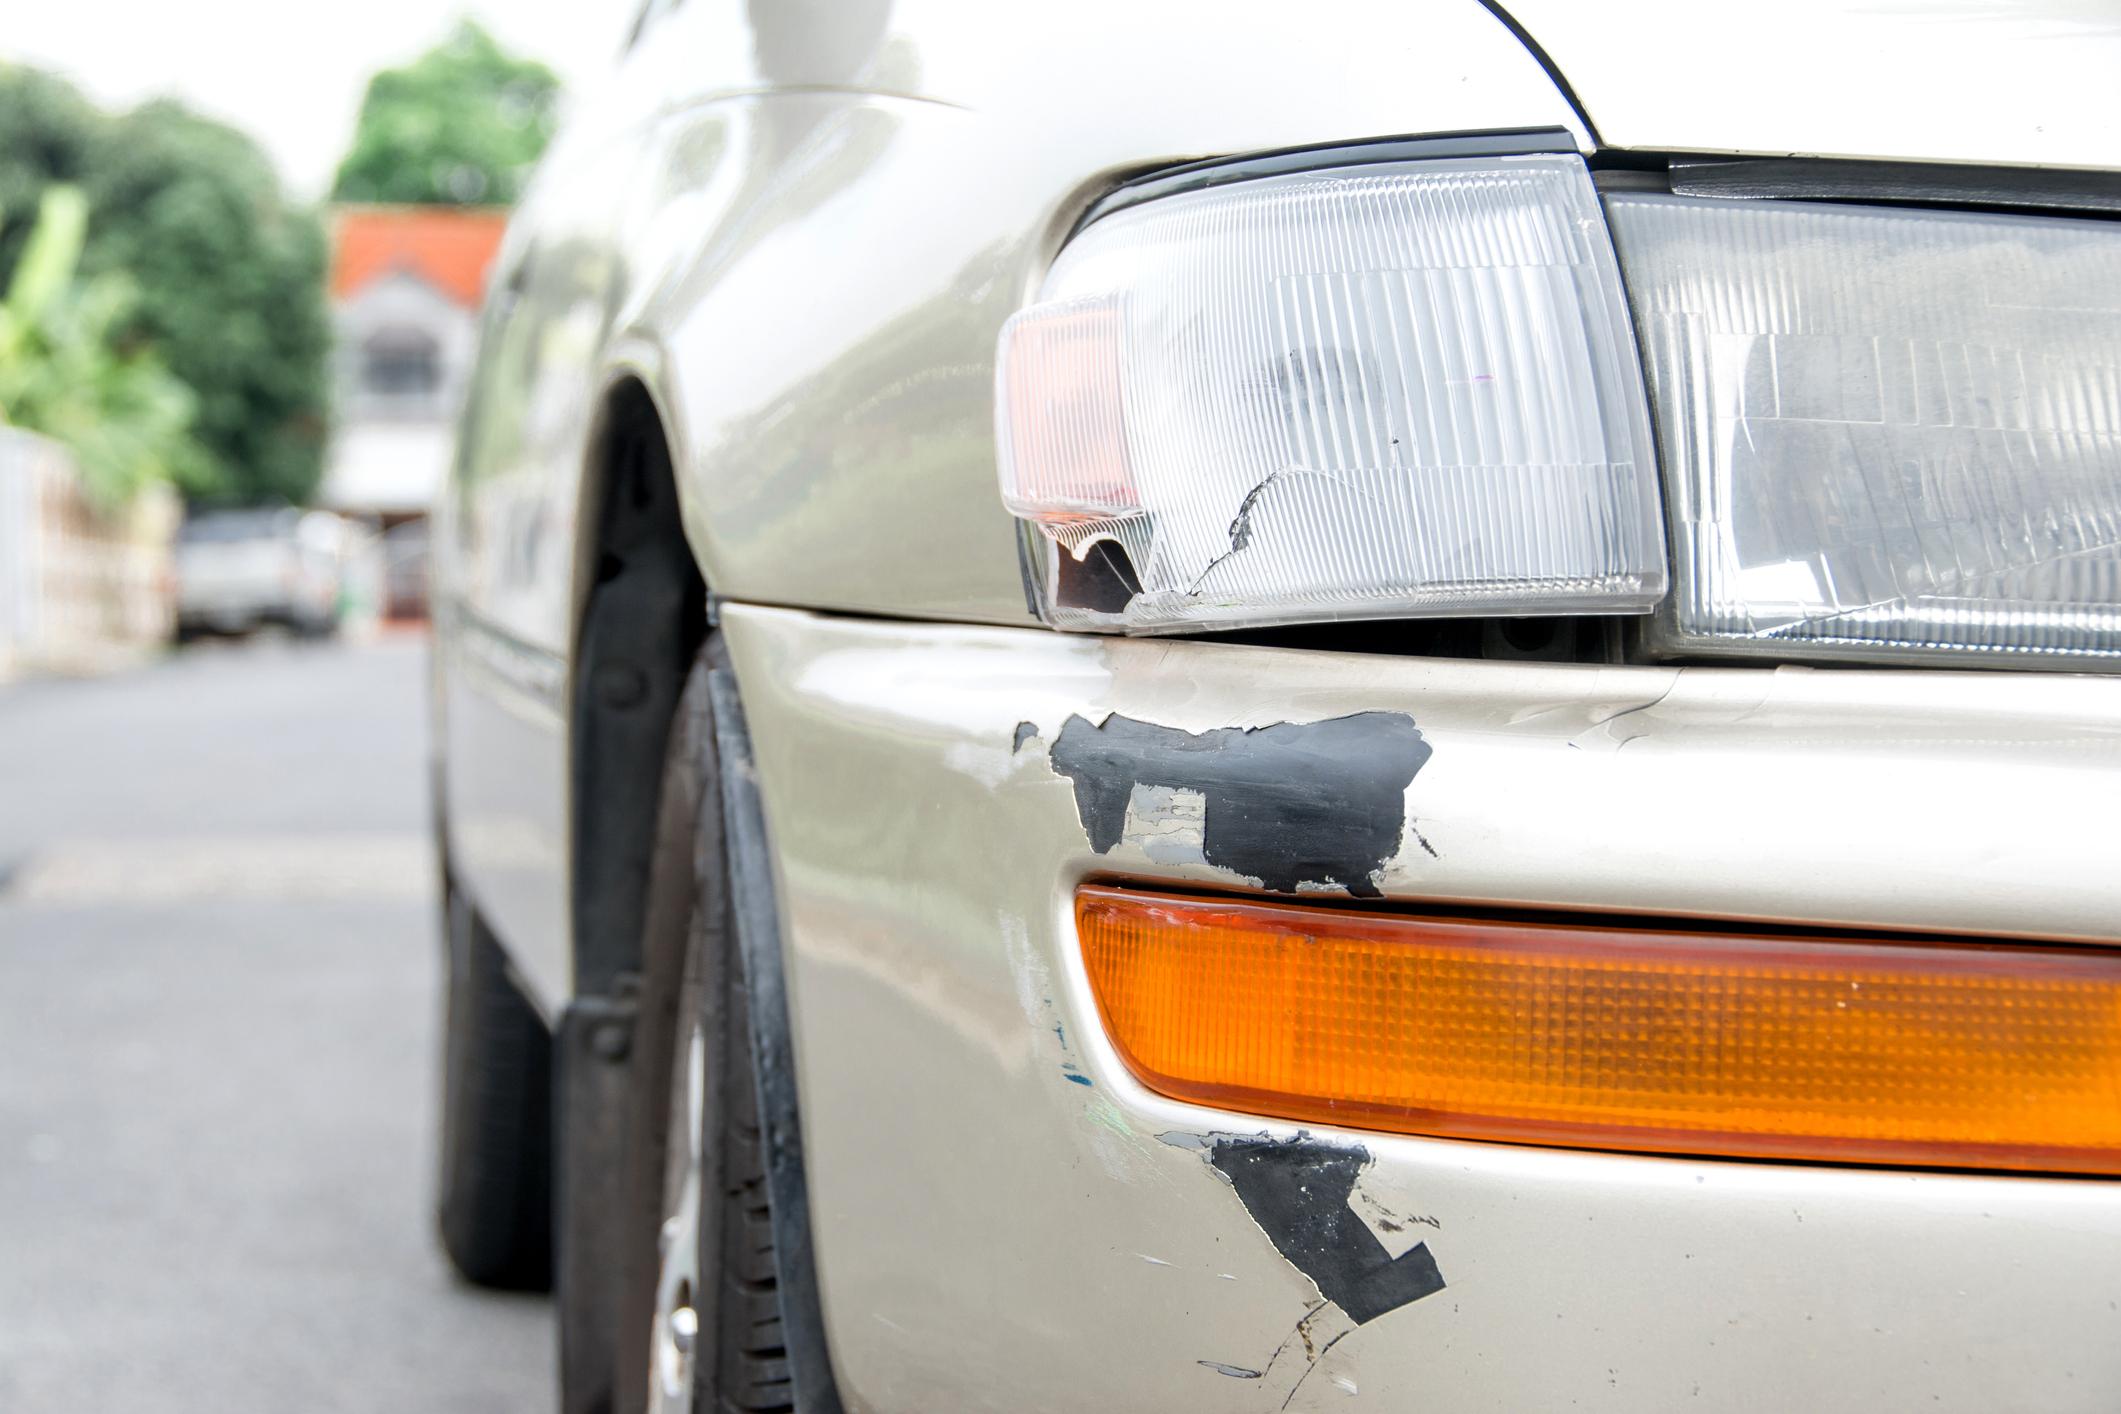 Welche Versicherung zahlt Schäden am Auto? 